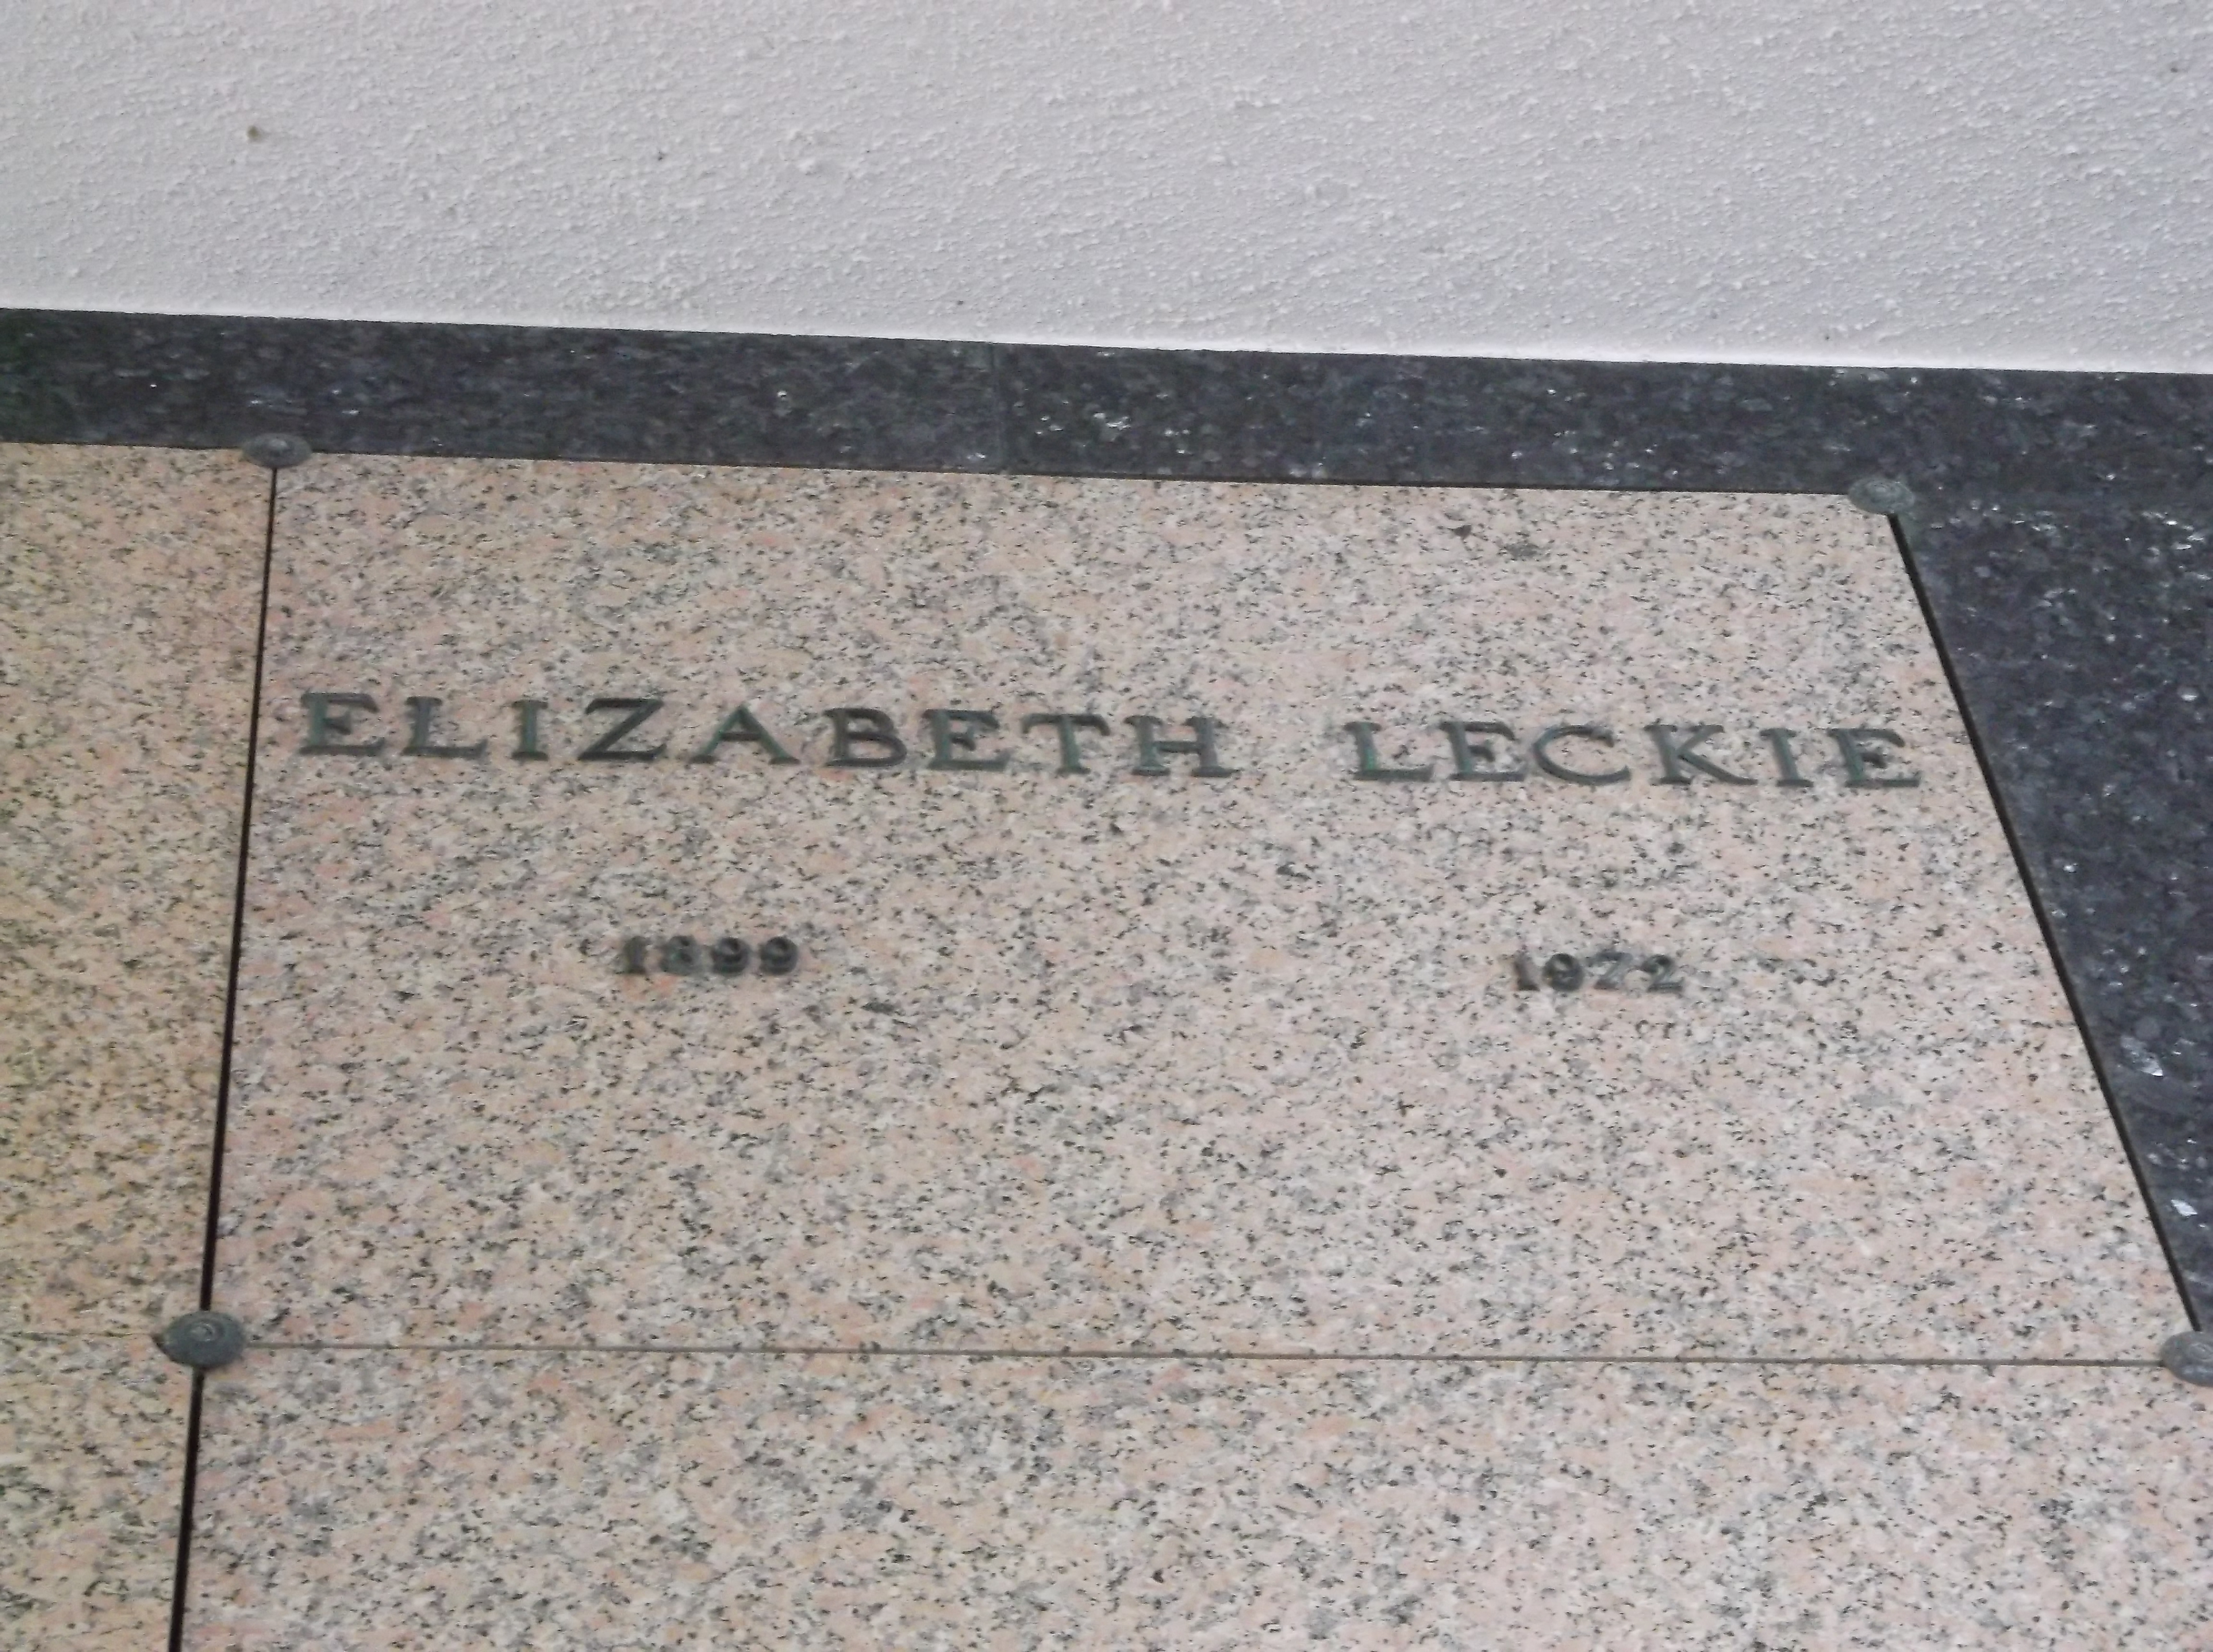 Elizabeth Leckie